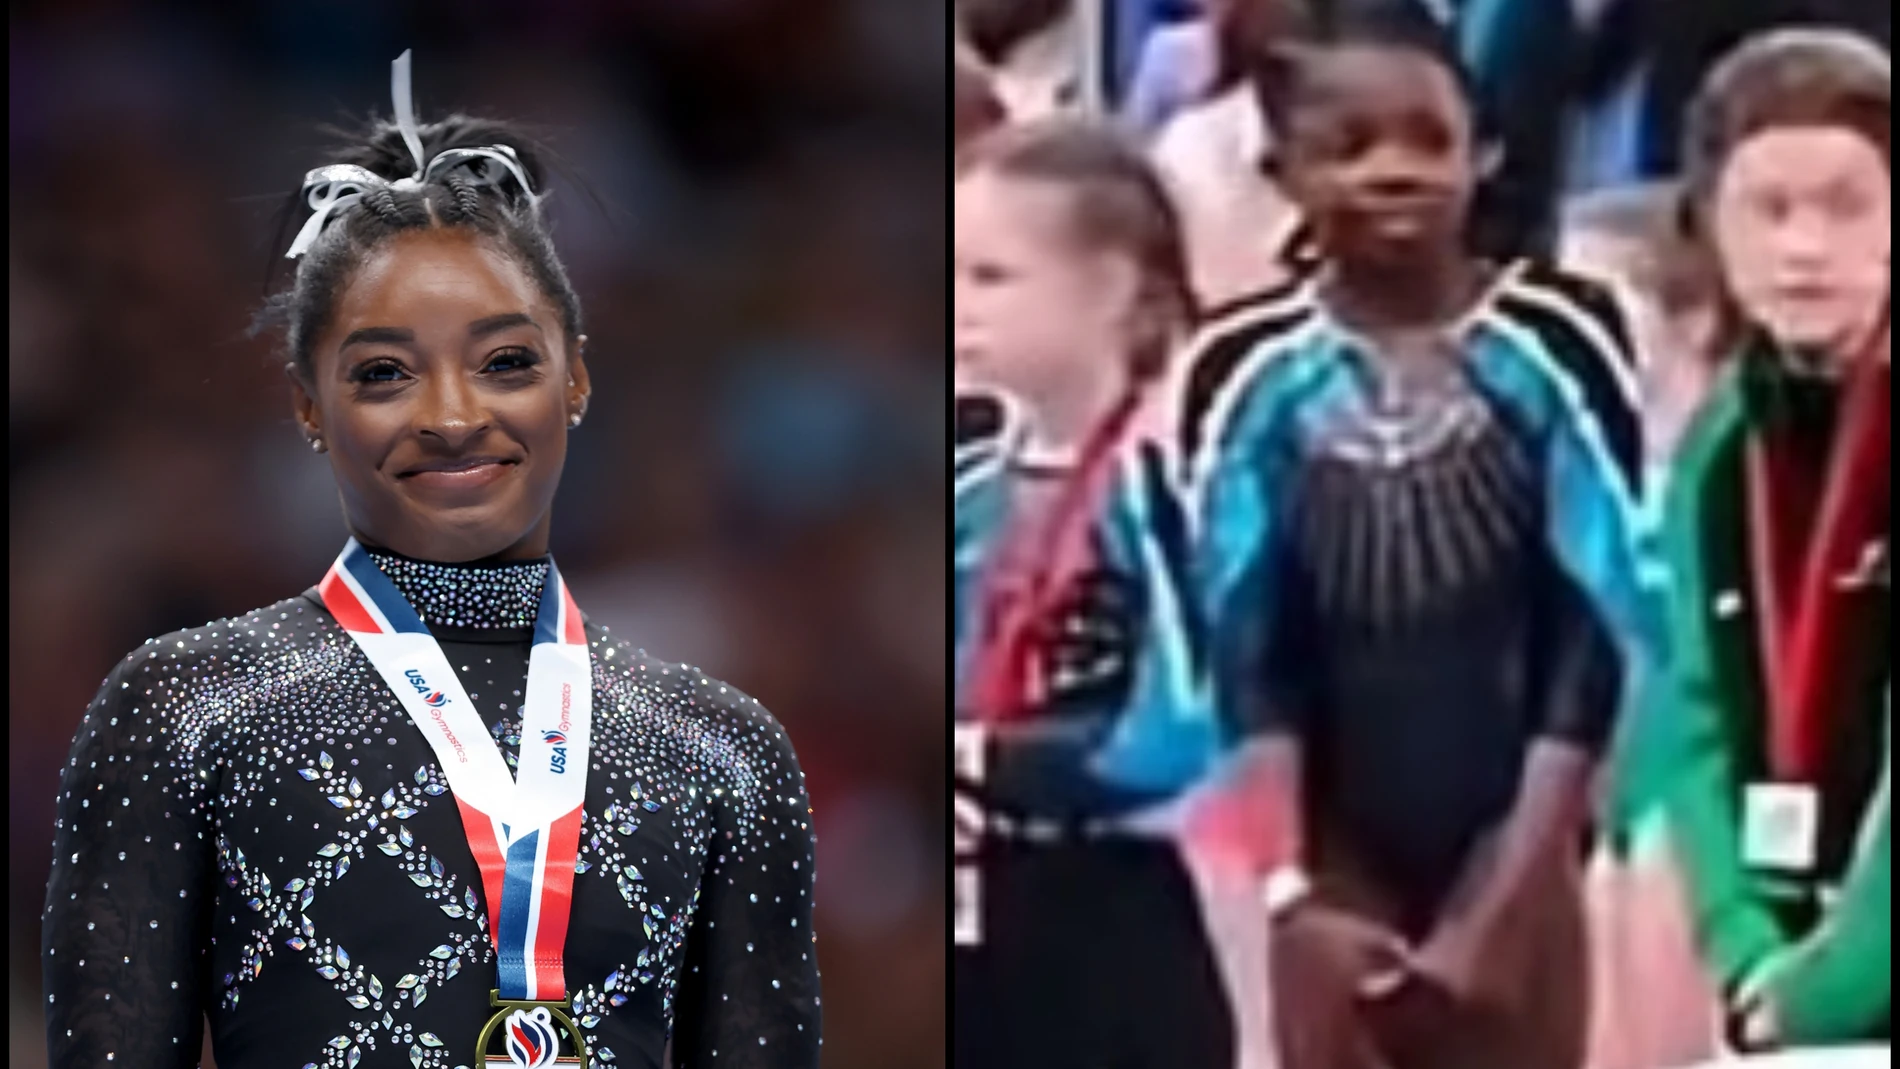 Escándalo racista en el deporte: dejan a una niña sin medalla por ser negra